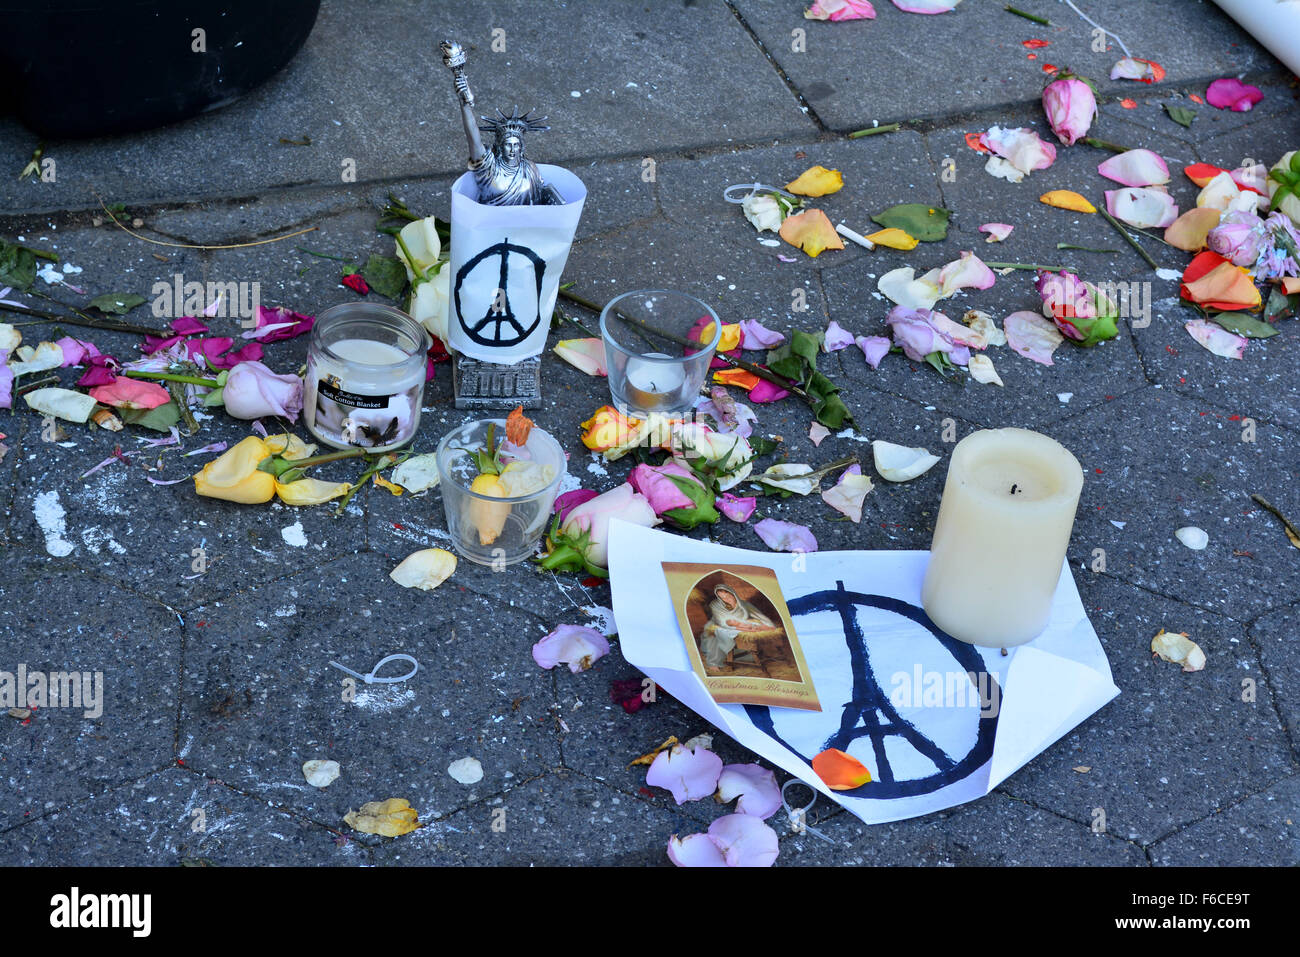 Memorial en la Ciudad de Nueva York después de los ataques terroristas en París. Foto de stock